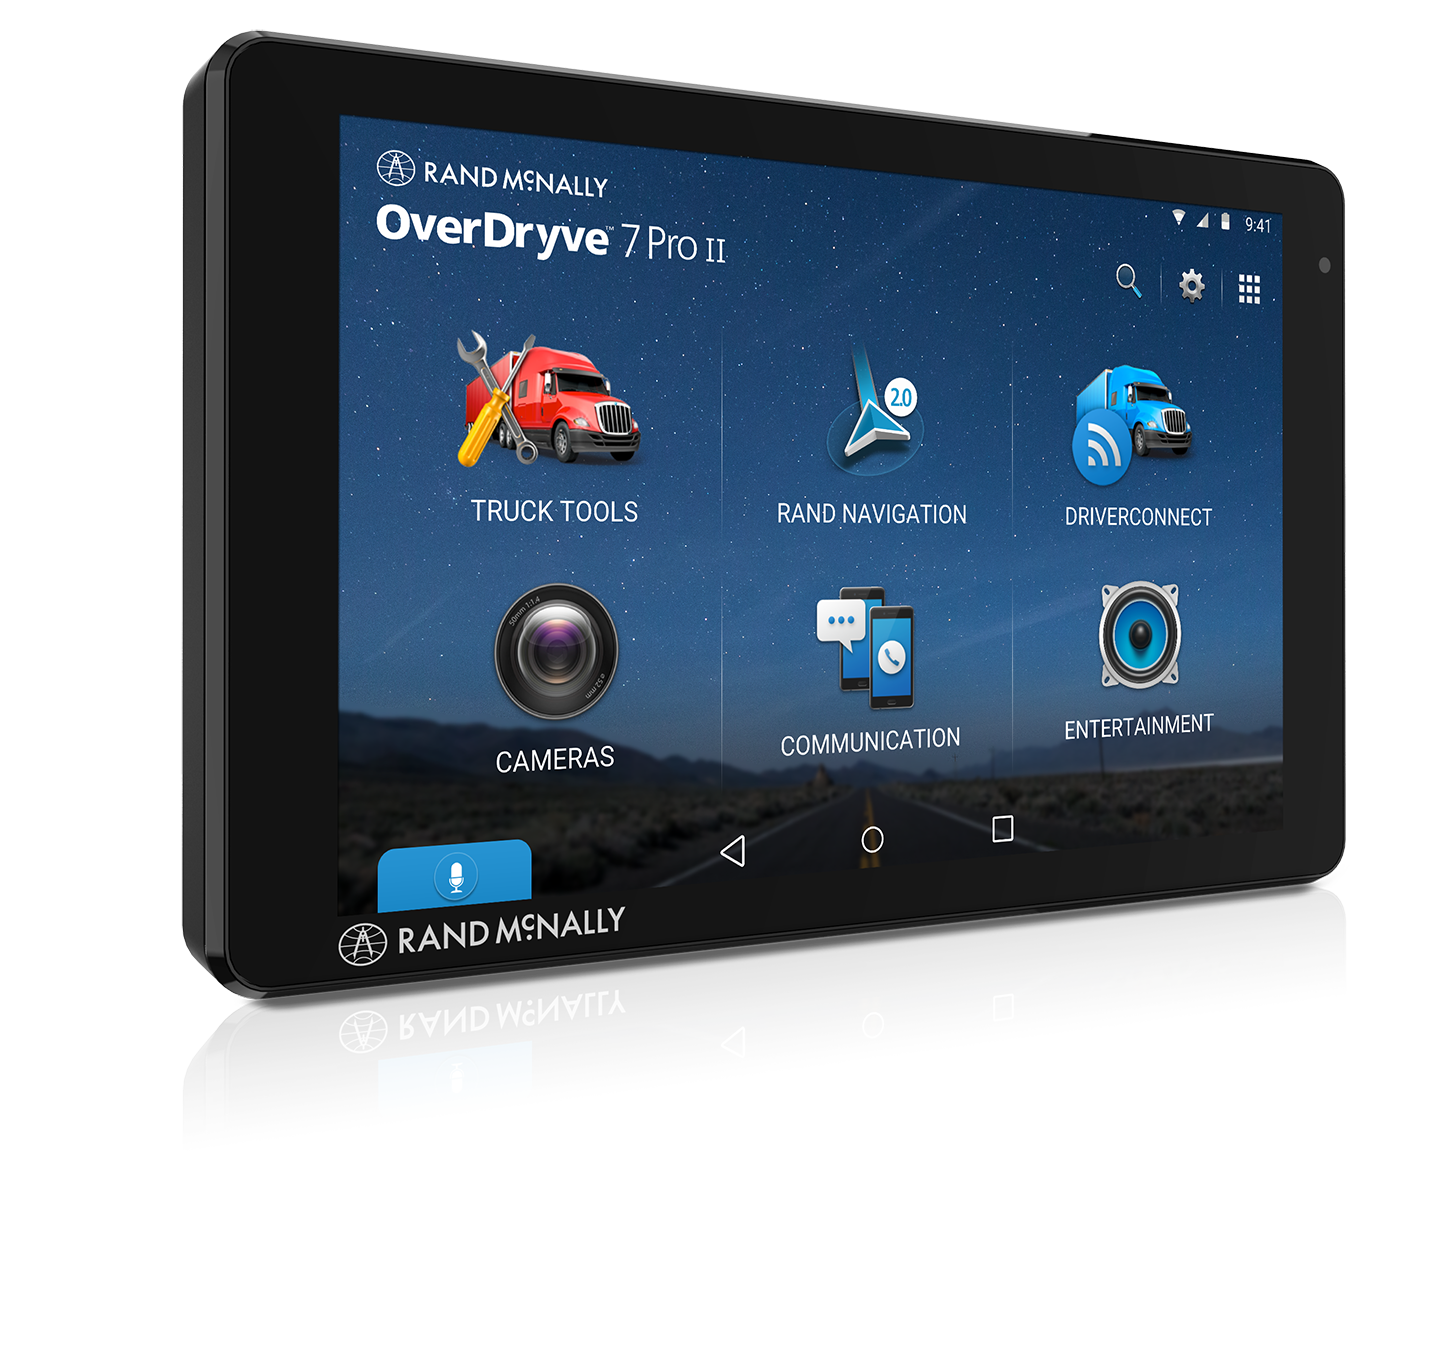 OverDryve 7 Pro II